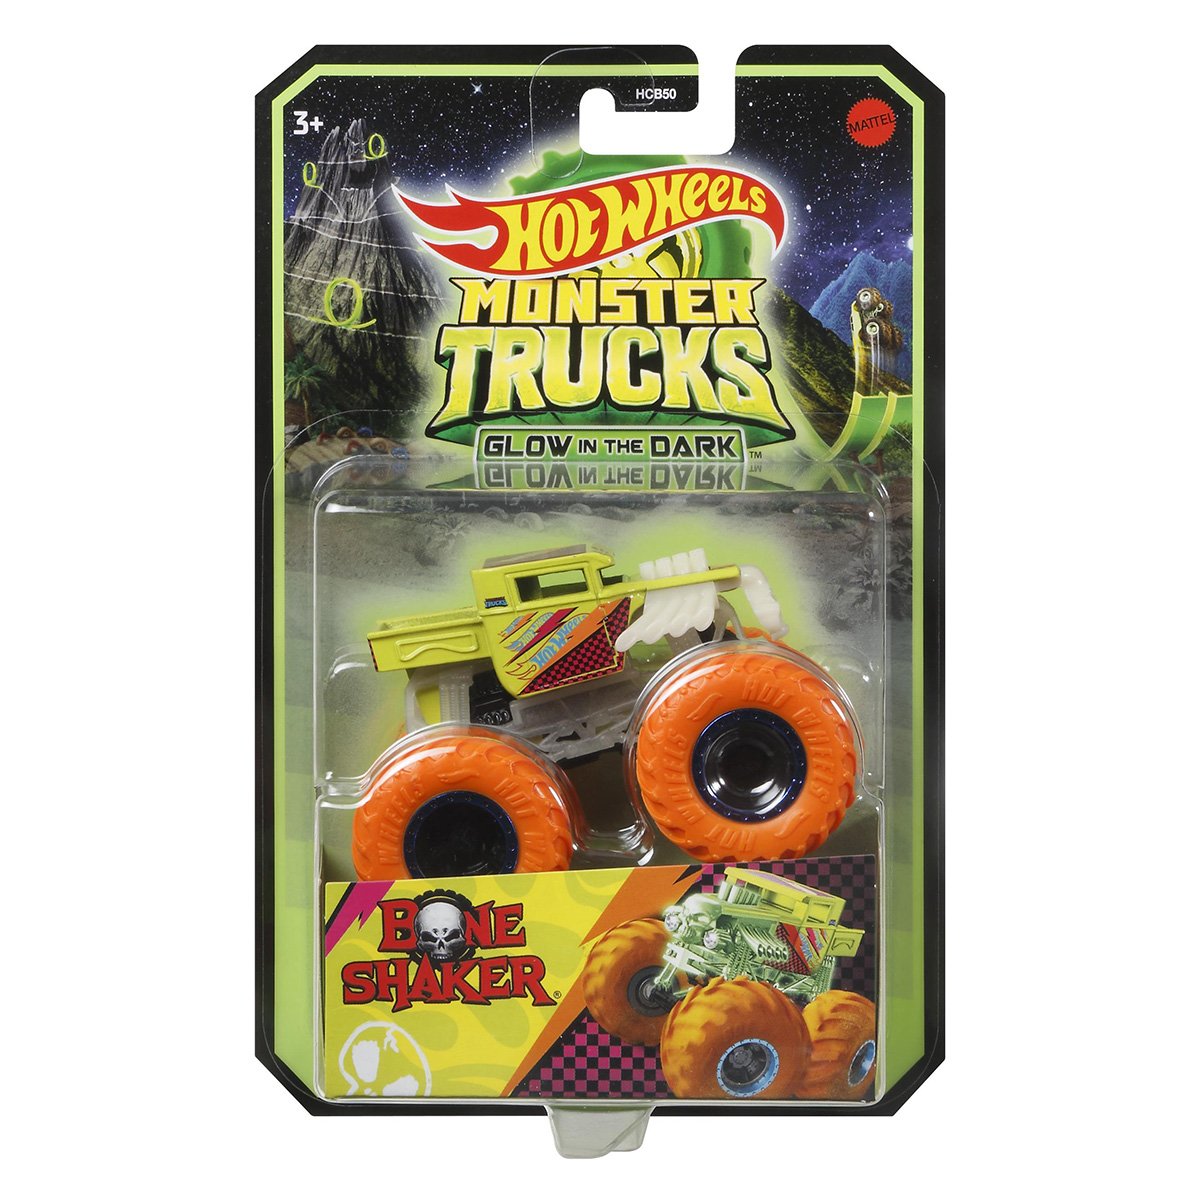 Masinuta Monster Trucks, Hot Wheels, Glow in the Dark, 1:64, Bone Shaker, HCB55